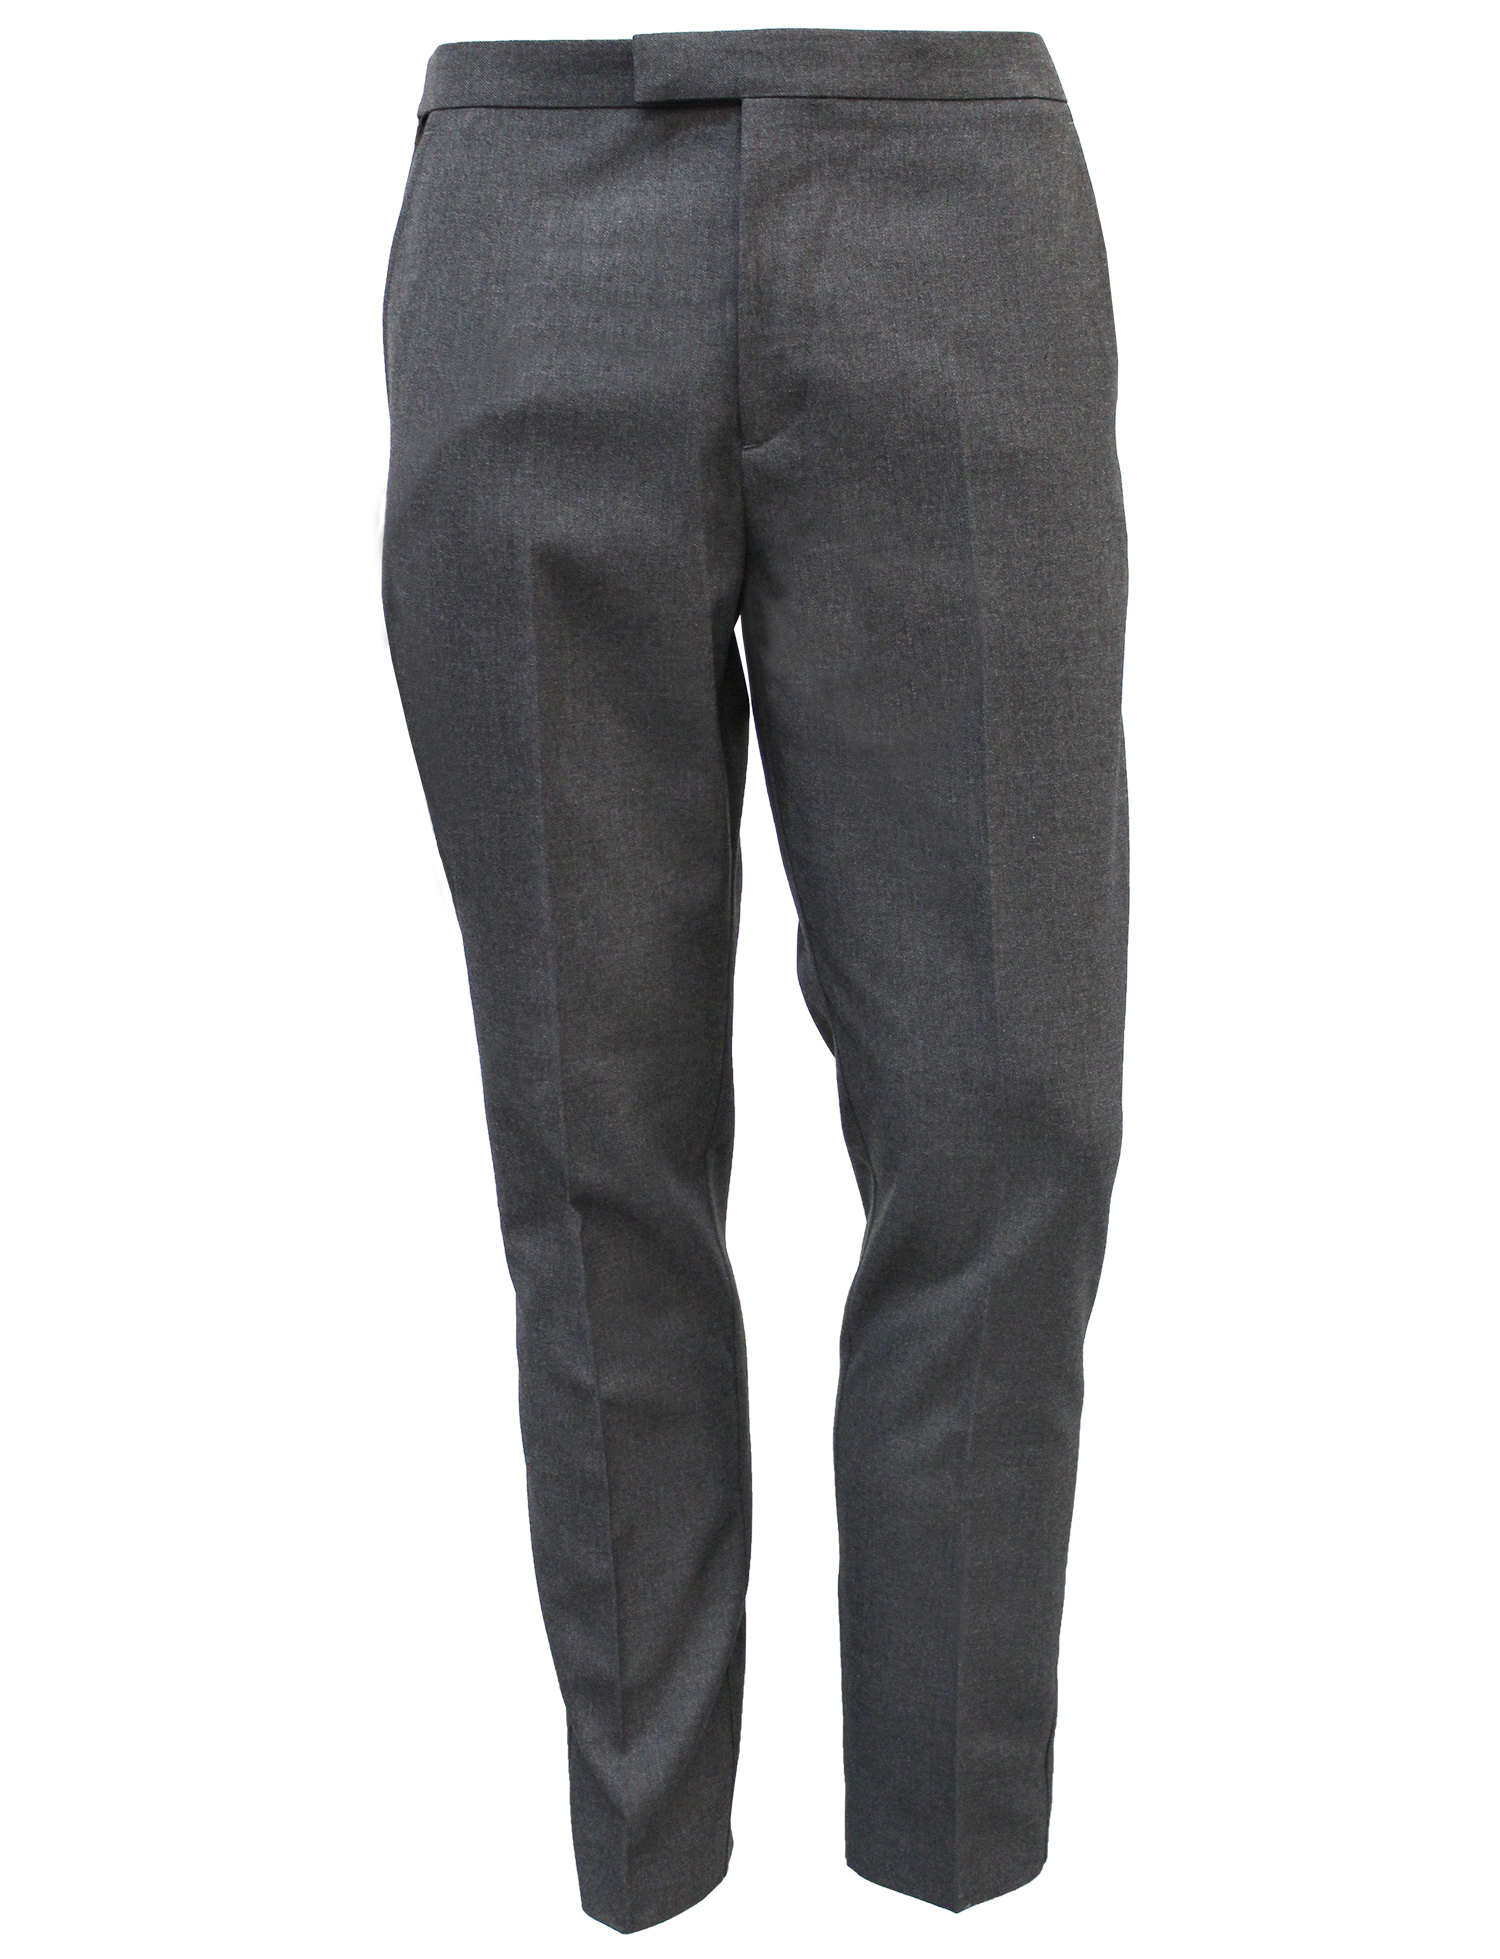 Grey Sturdy Elastic Waist Boys Trousers (246) - Quality Schoolwear